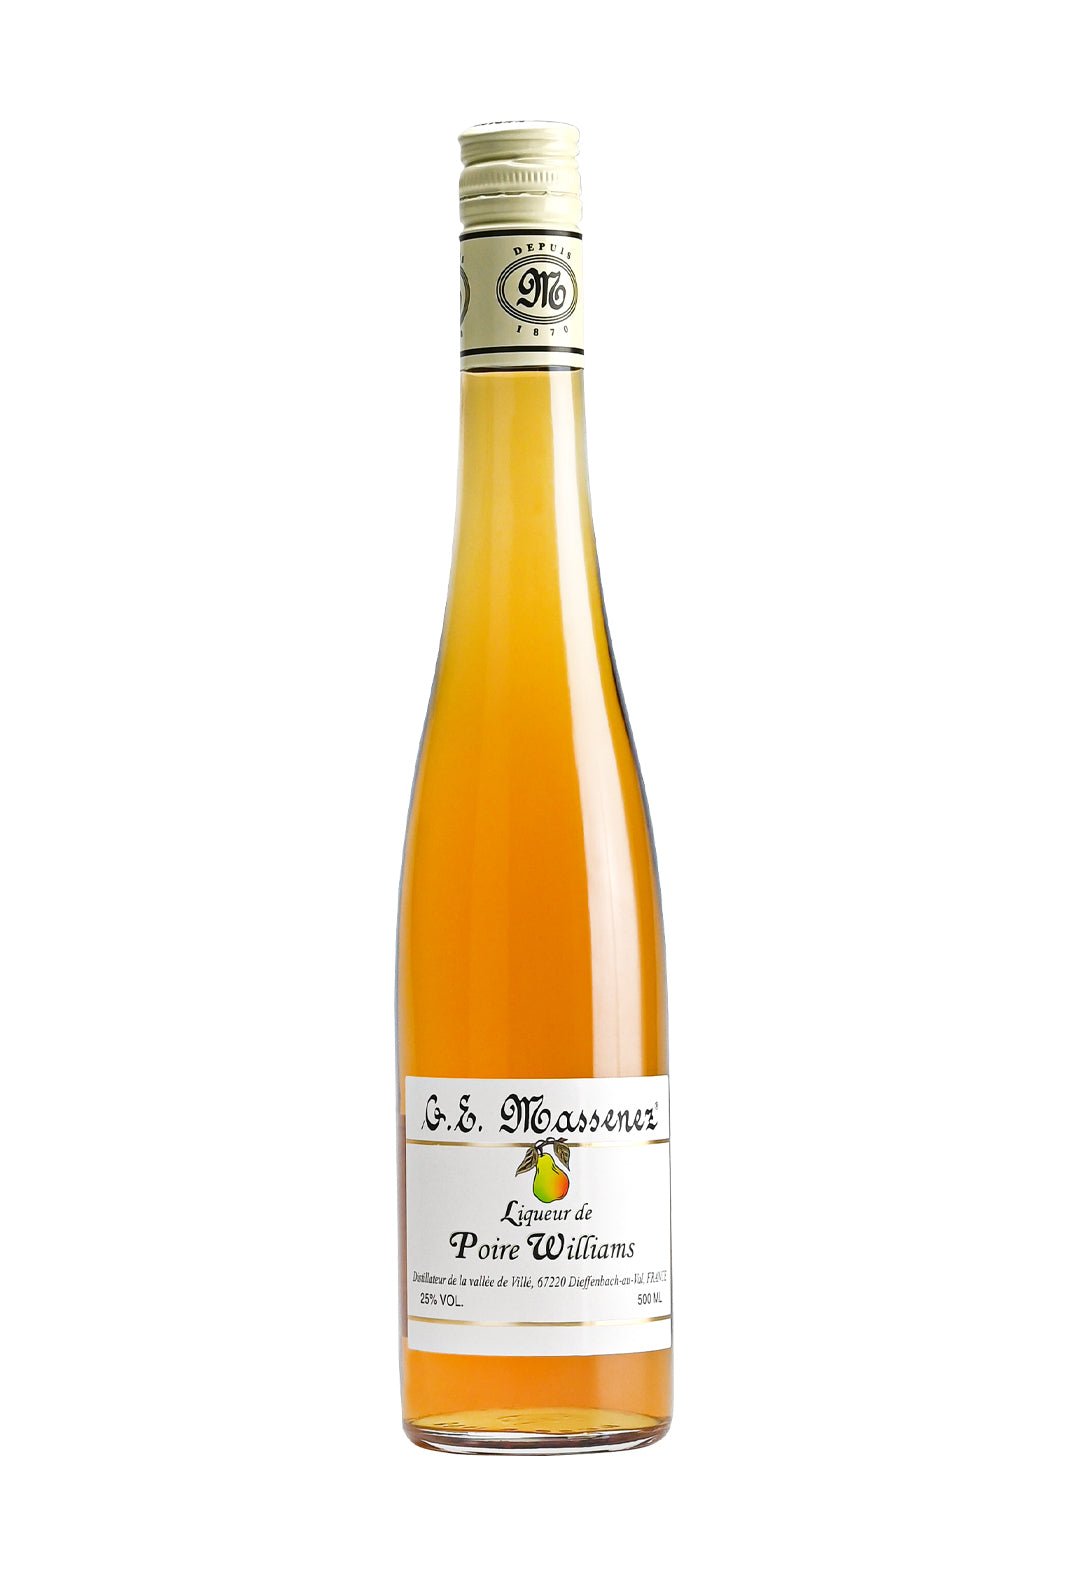 Massenez Poire William (William Pear ) Liqueur 25% 500ml | liqueur | Shop online at Spirits of France